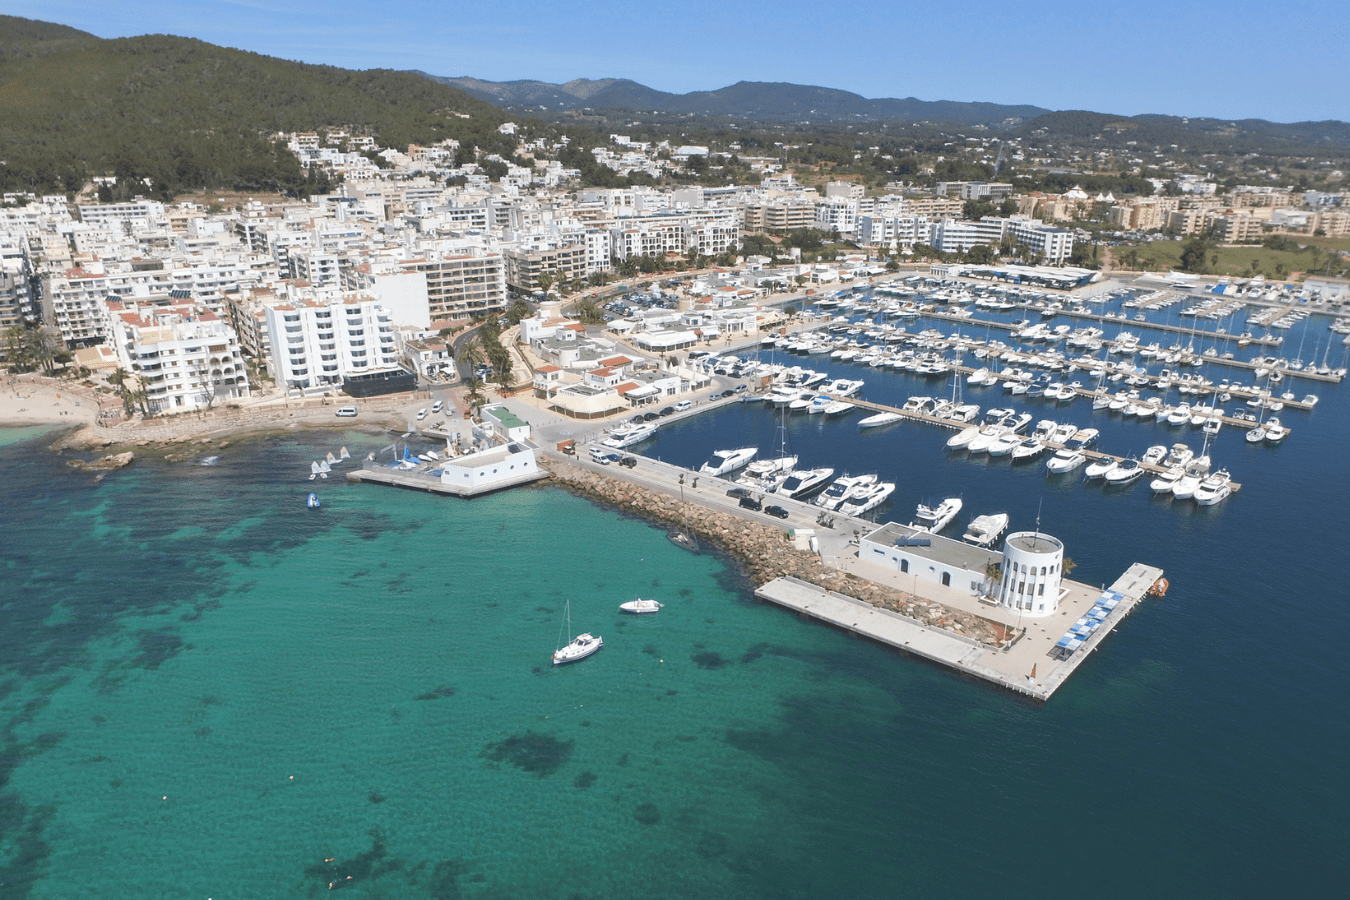 salidas de pesca en Barco Santa Eulalia Ibiza - Charters de pesca en Santa Eulalia Ibiza - Pesca deportiva desde barcos